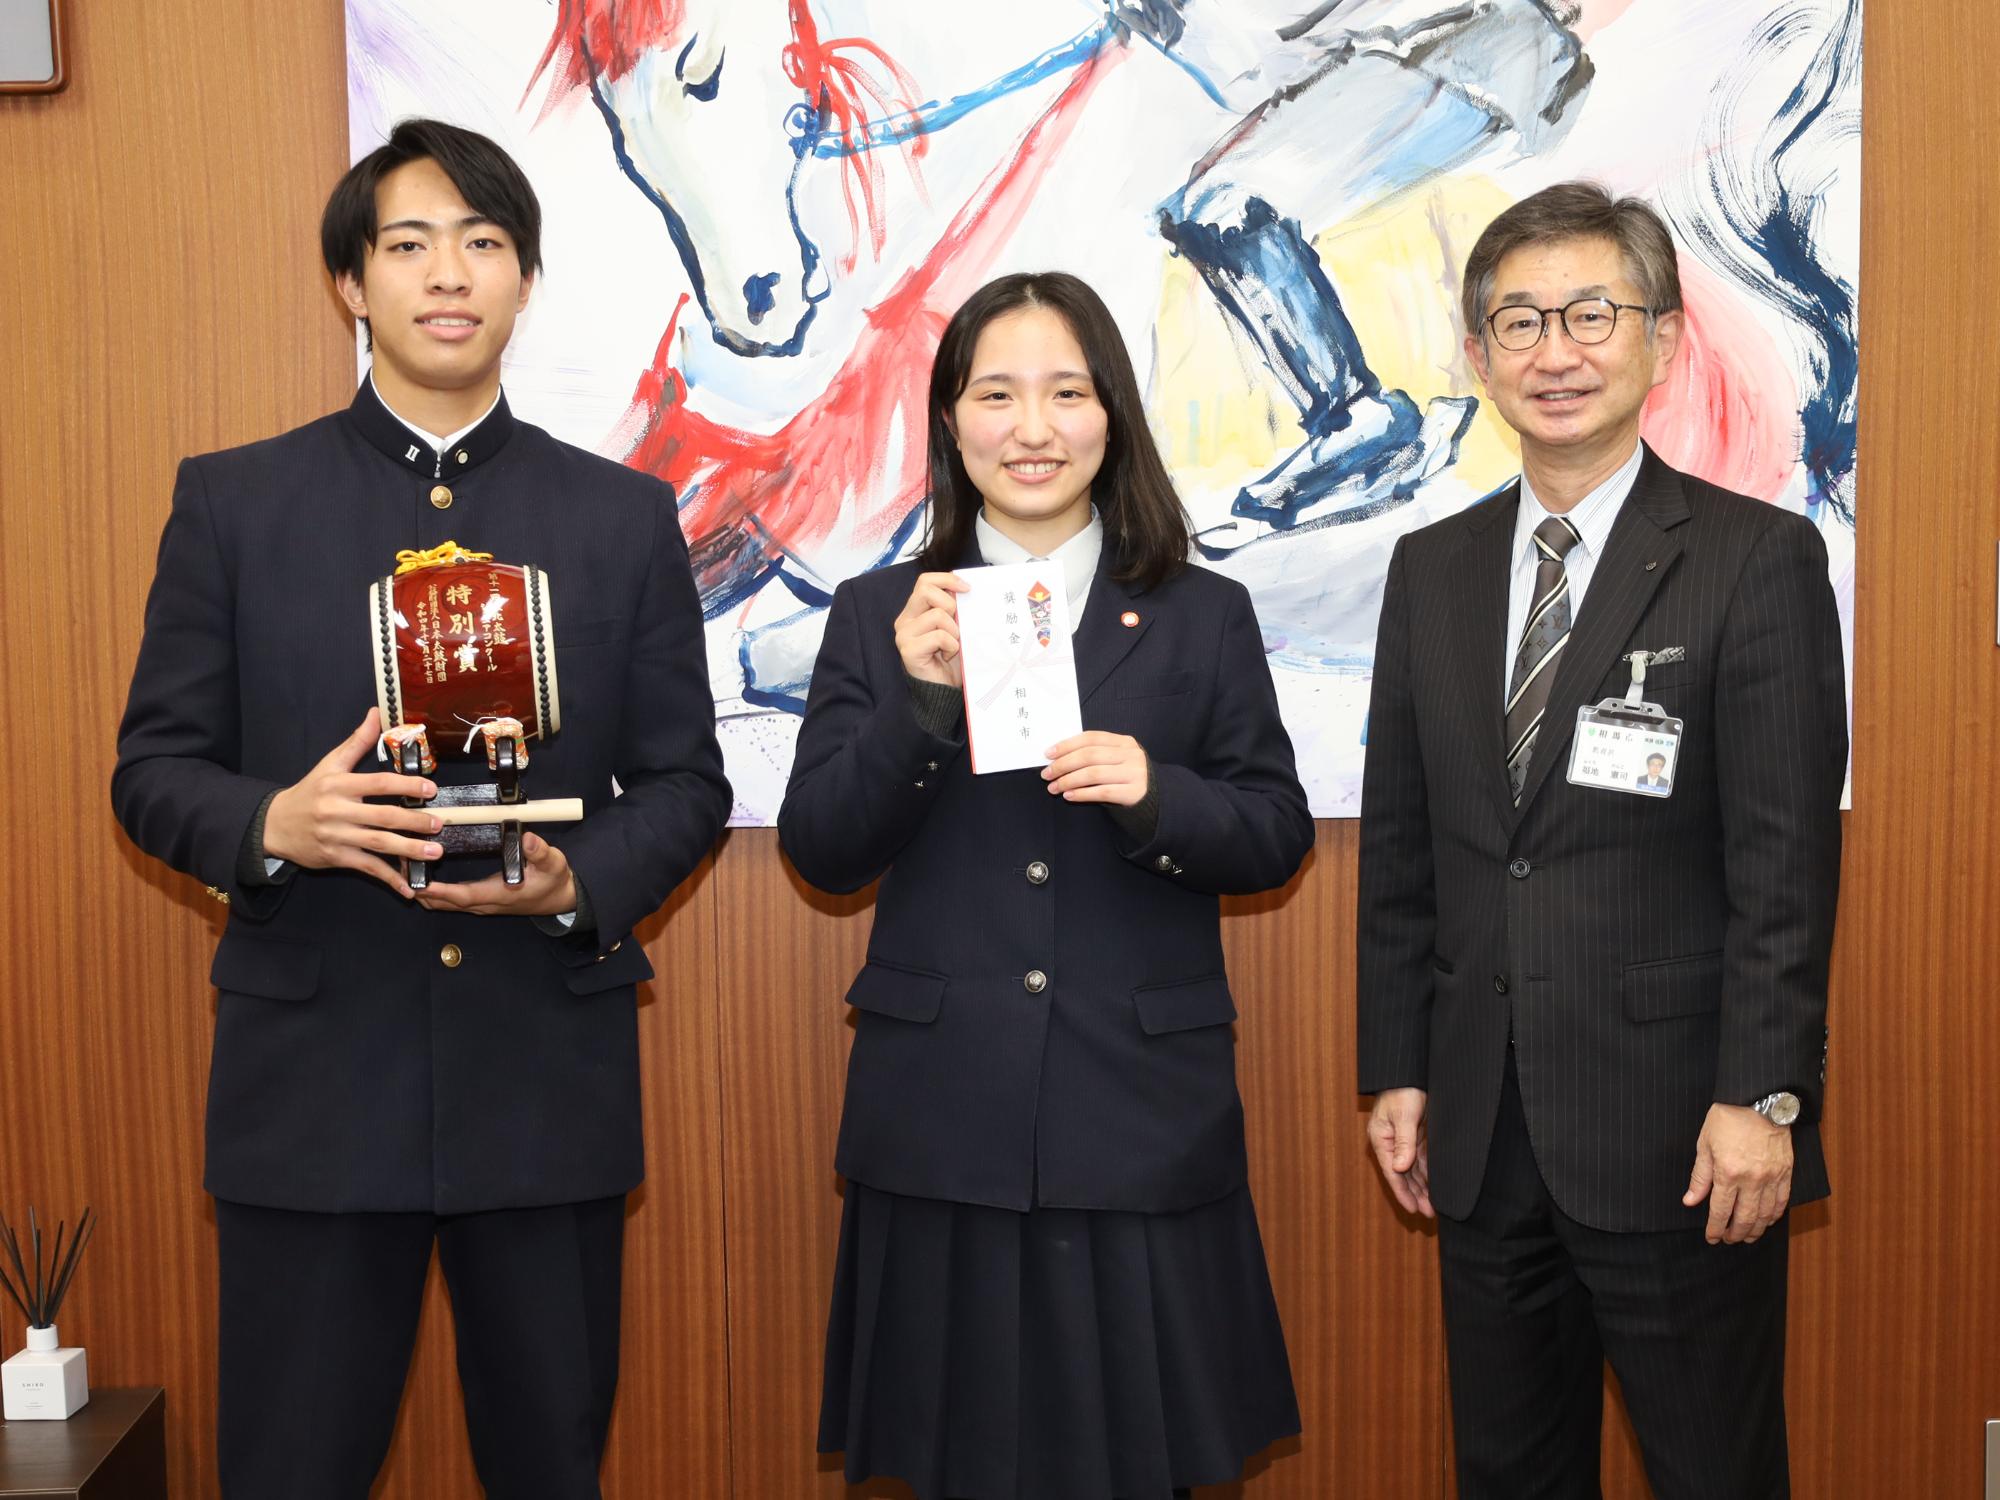 芸術文化奨励金交付式で、相馬太鼓部代表者が福地教育長に受賞を報告する様子